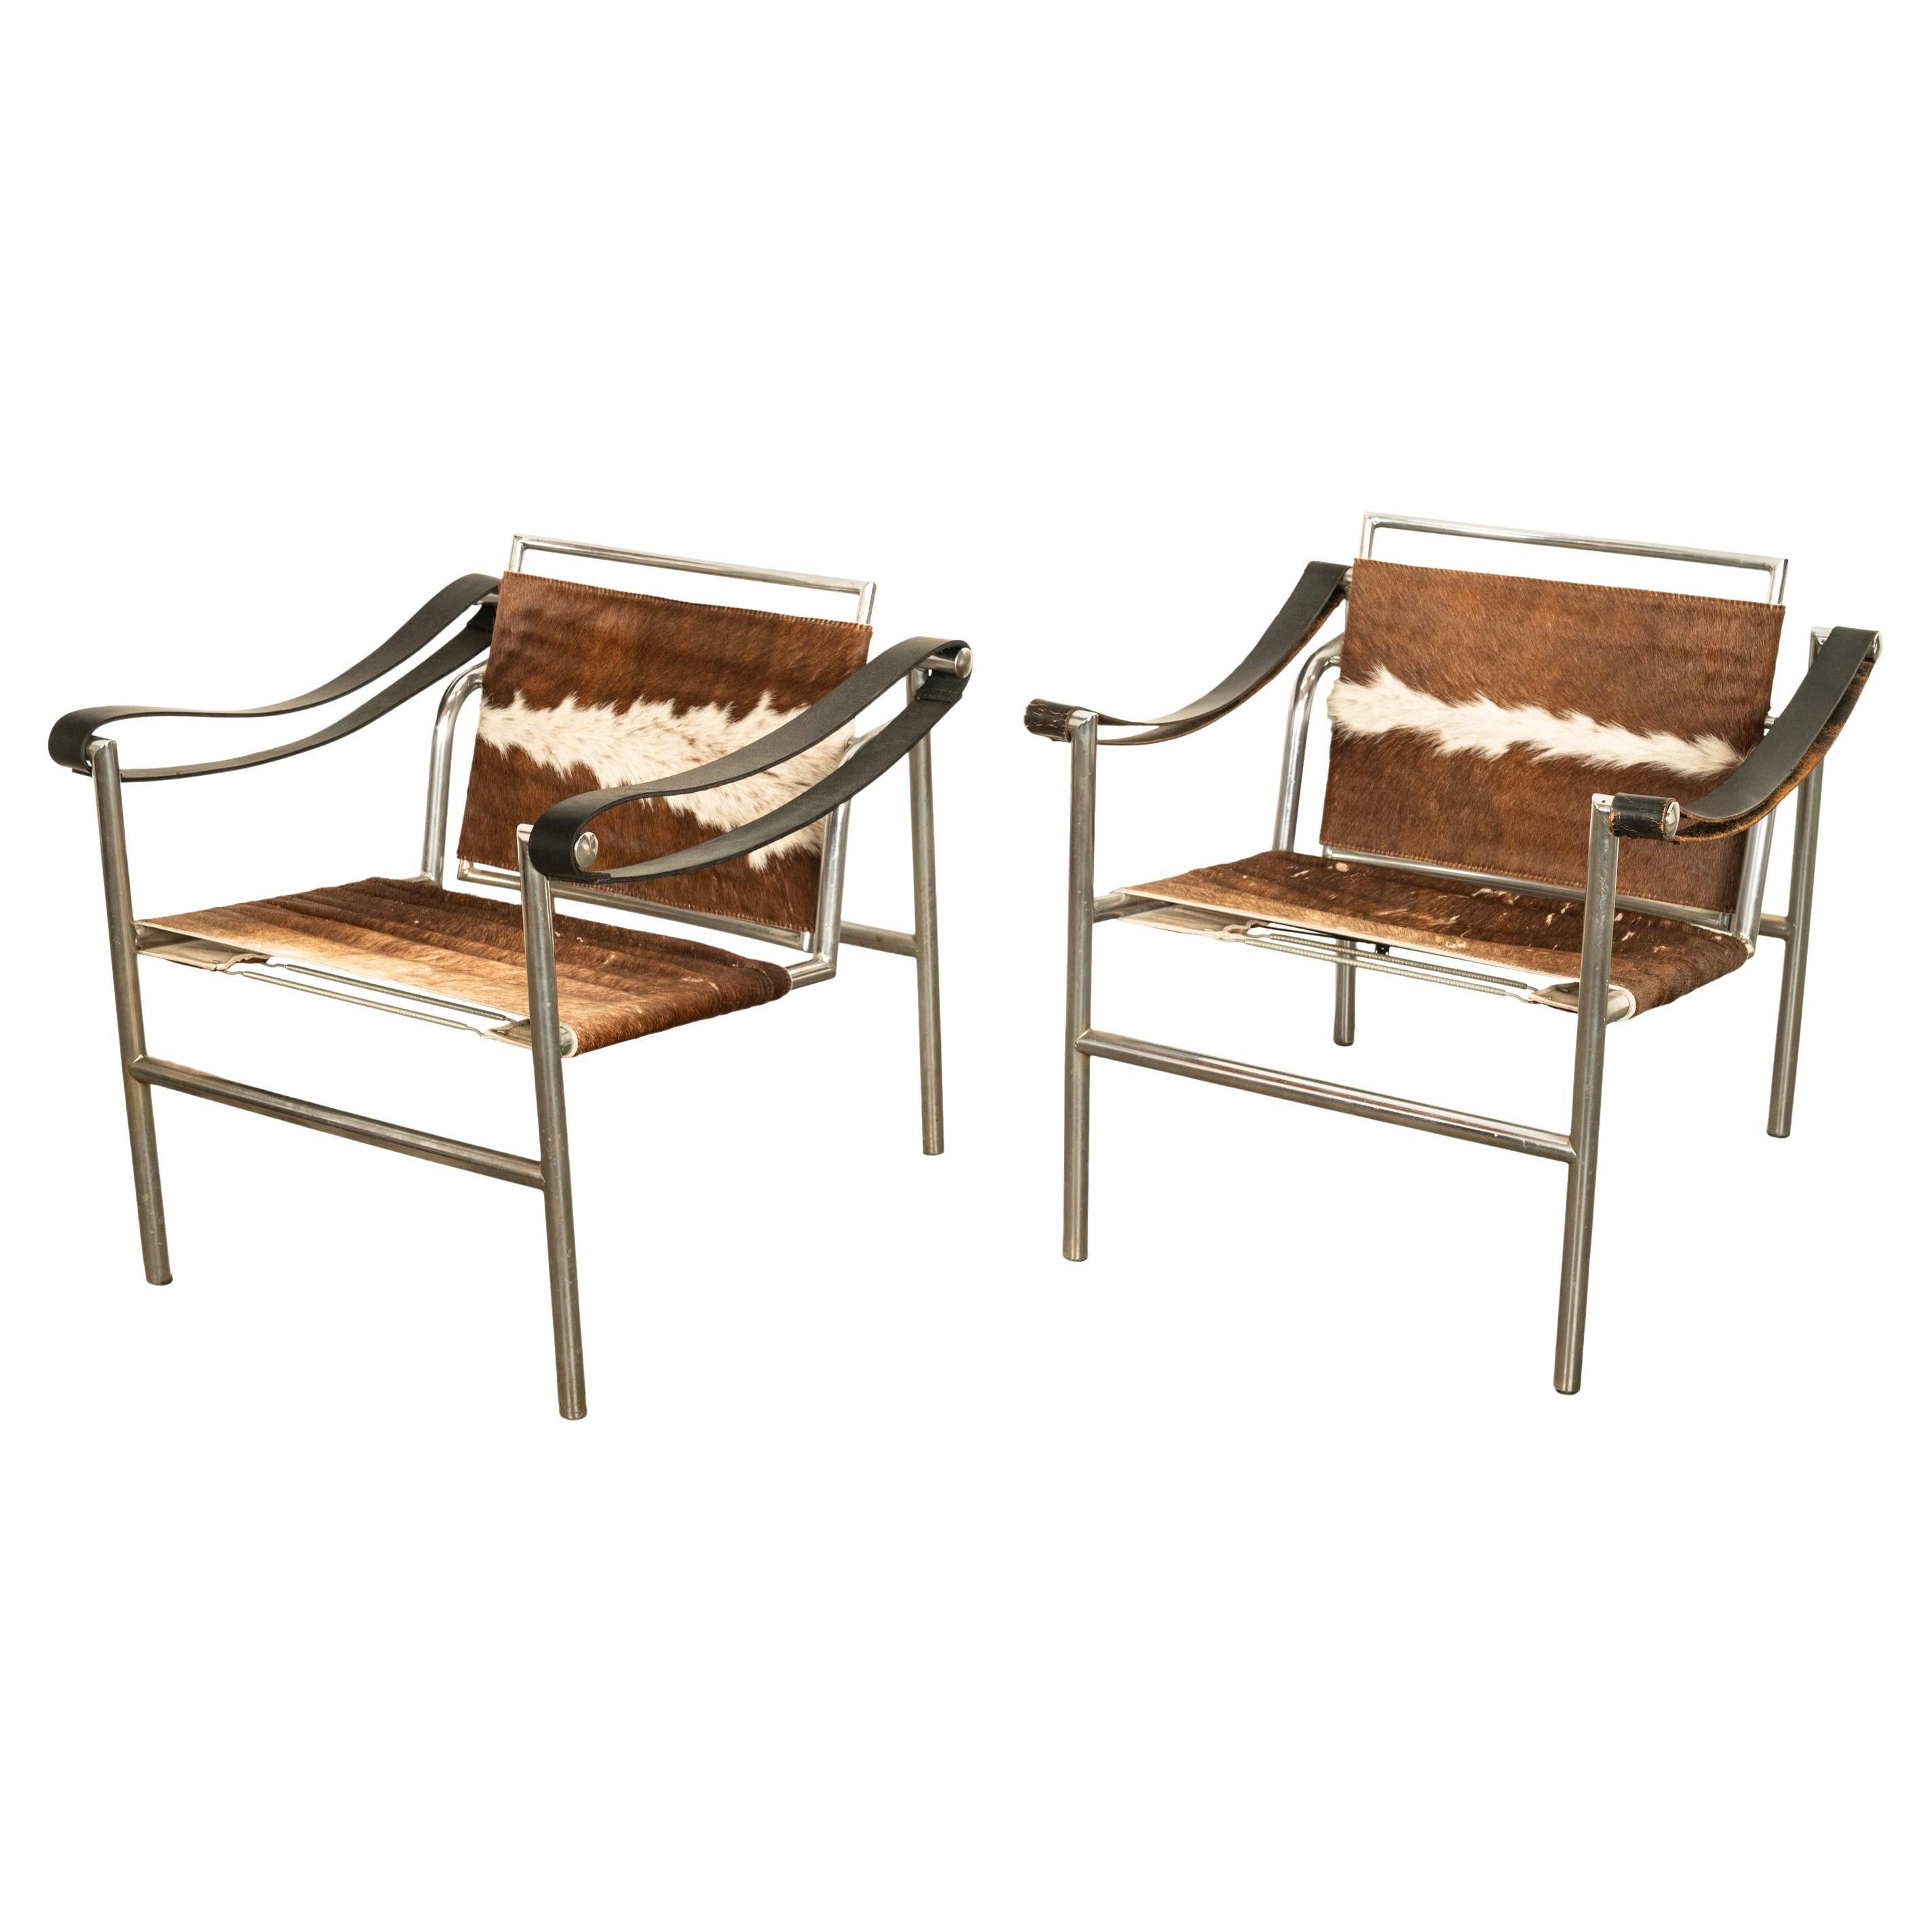 Ein sehr gutes Paar MCM Le Corbusier LC1 Sling Stühle, von Cassina, 1960er Jahre.
Dieses ikonische Design wurde 1929 im Bauhaus durch die Collaboration von Le Corbusier und Charlotte Perriand entworfen.
Bei diesem Paar handelt es sich um eine frühe